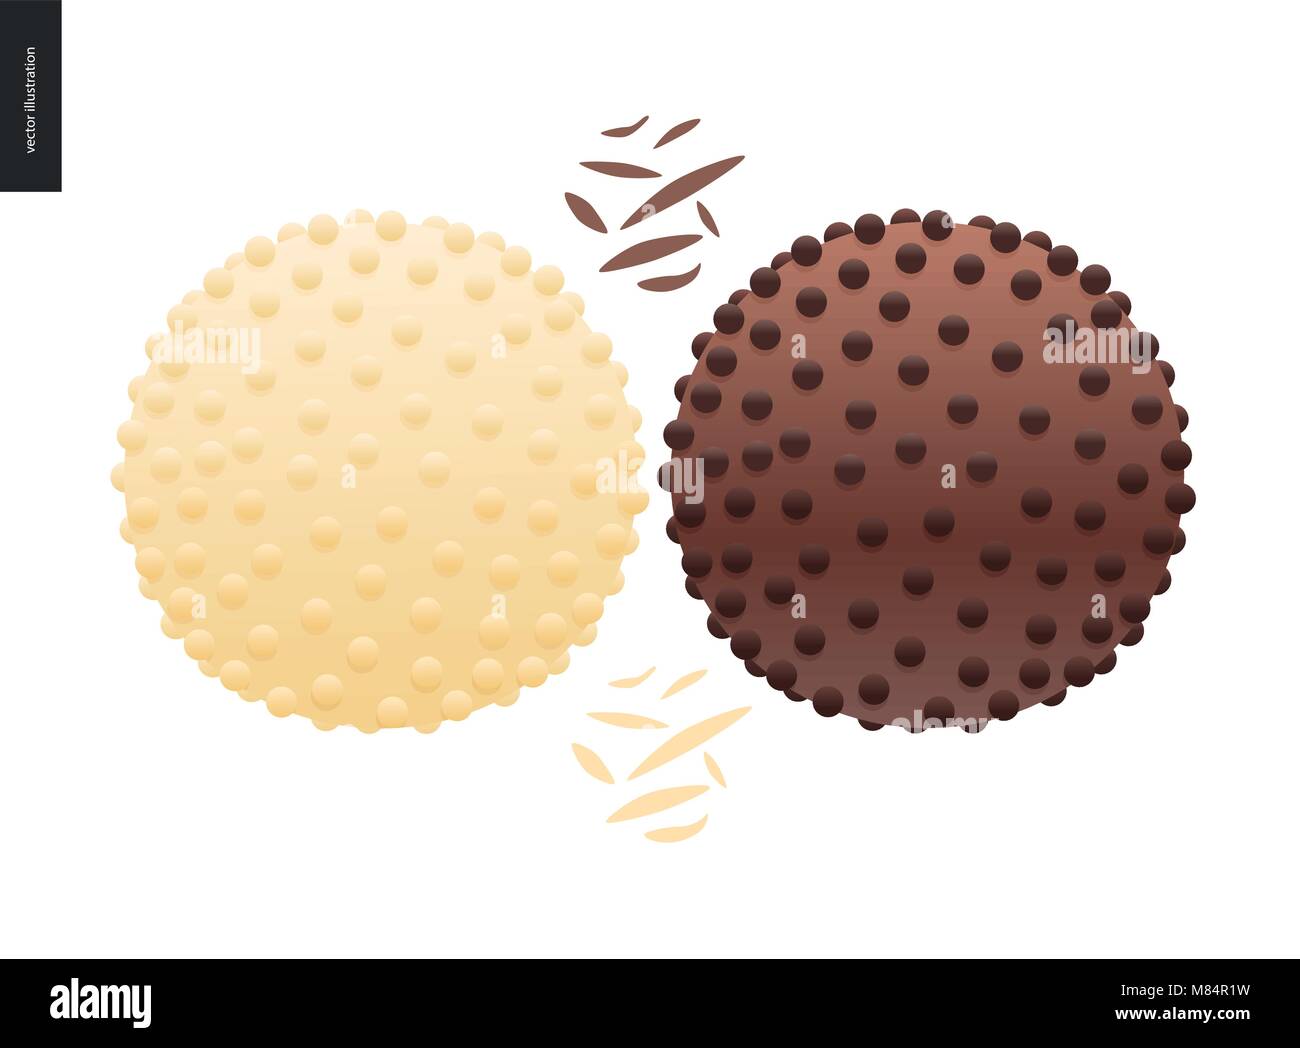 Liebe Frühling Schokolade - dunkle und weiße Schokolade scharfe Bonbons und choclate Chips Stock Vektor